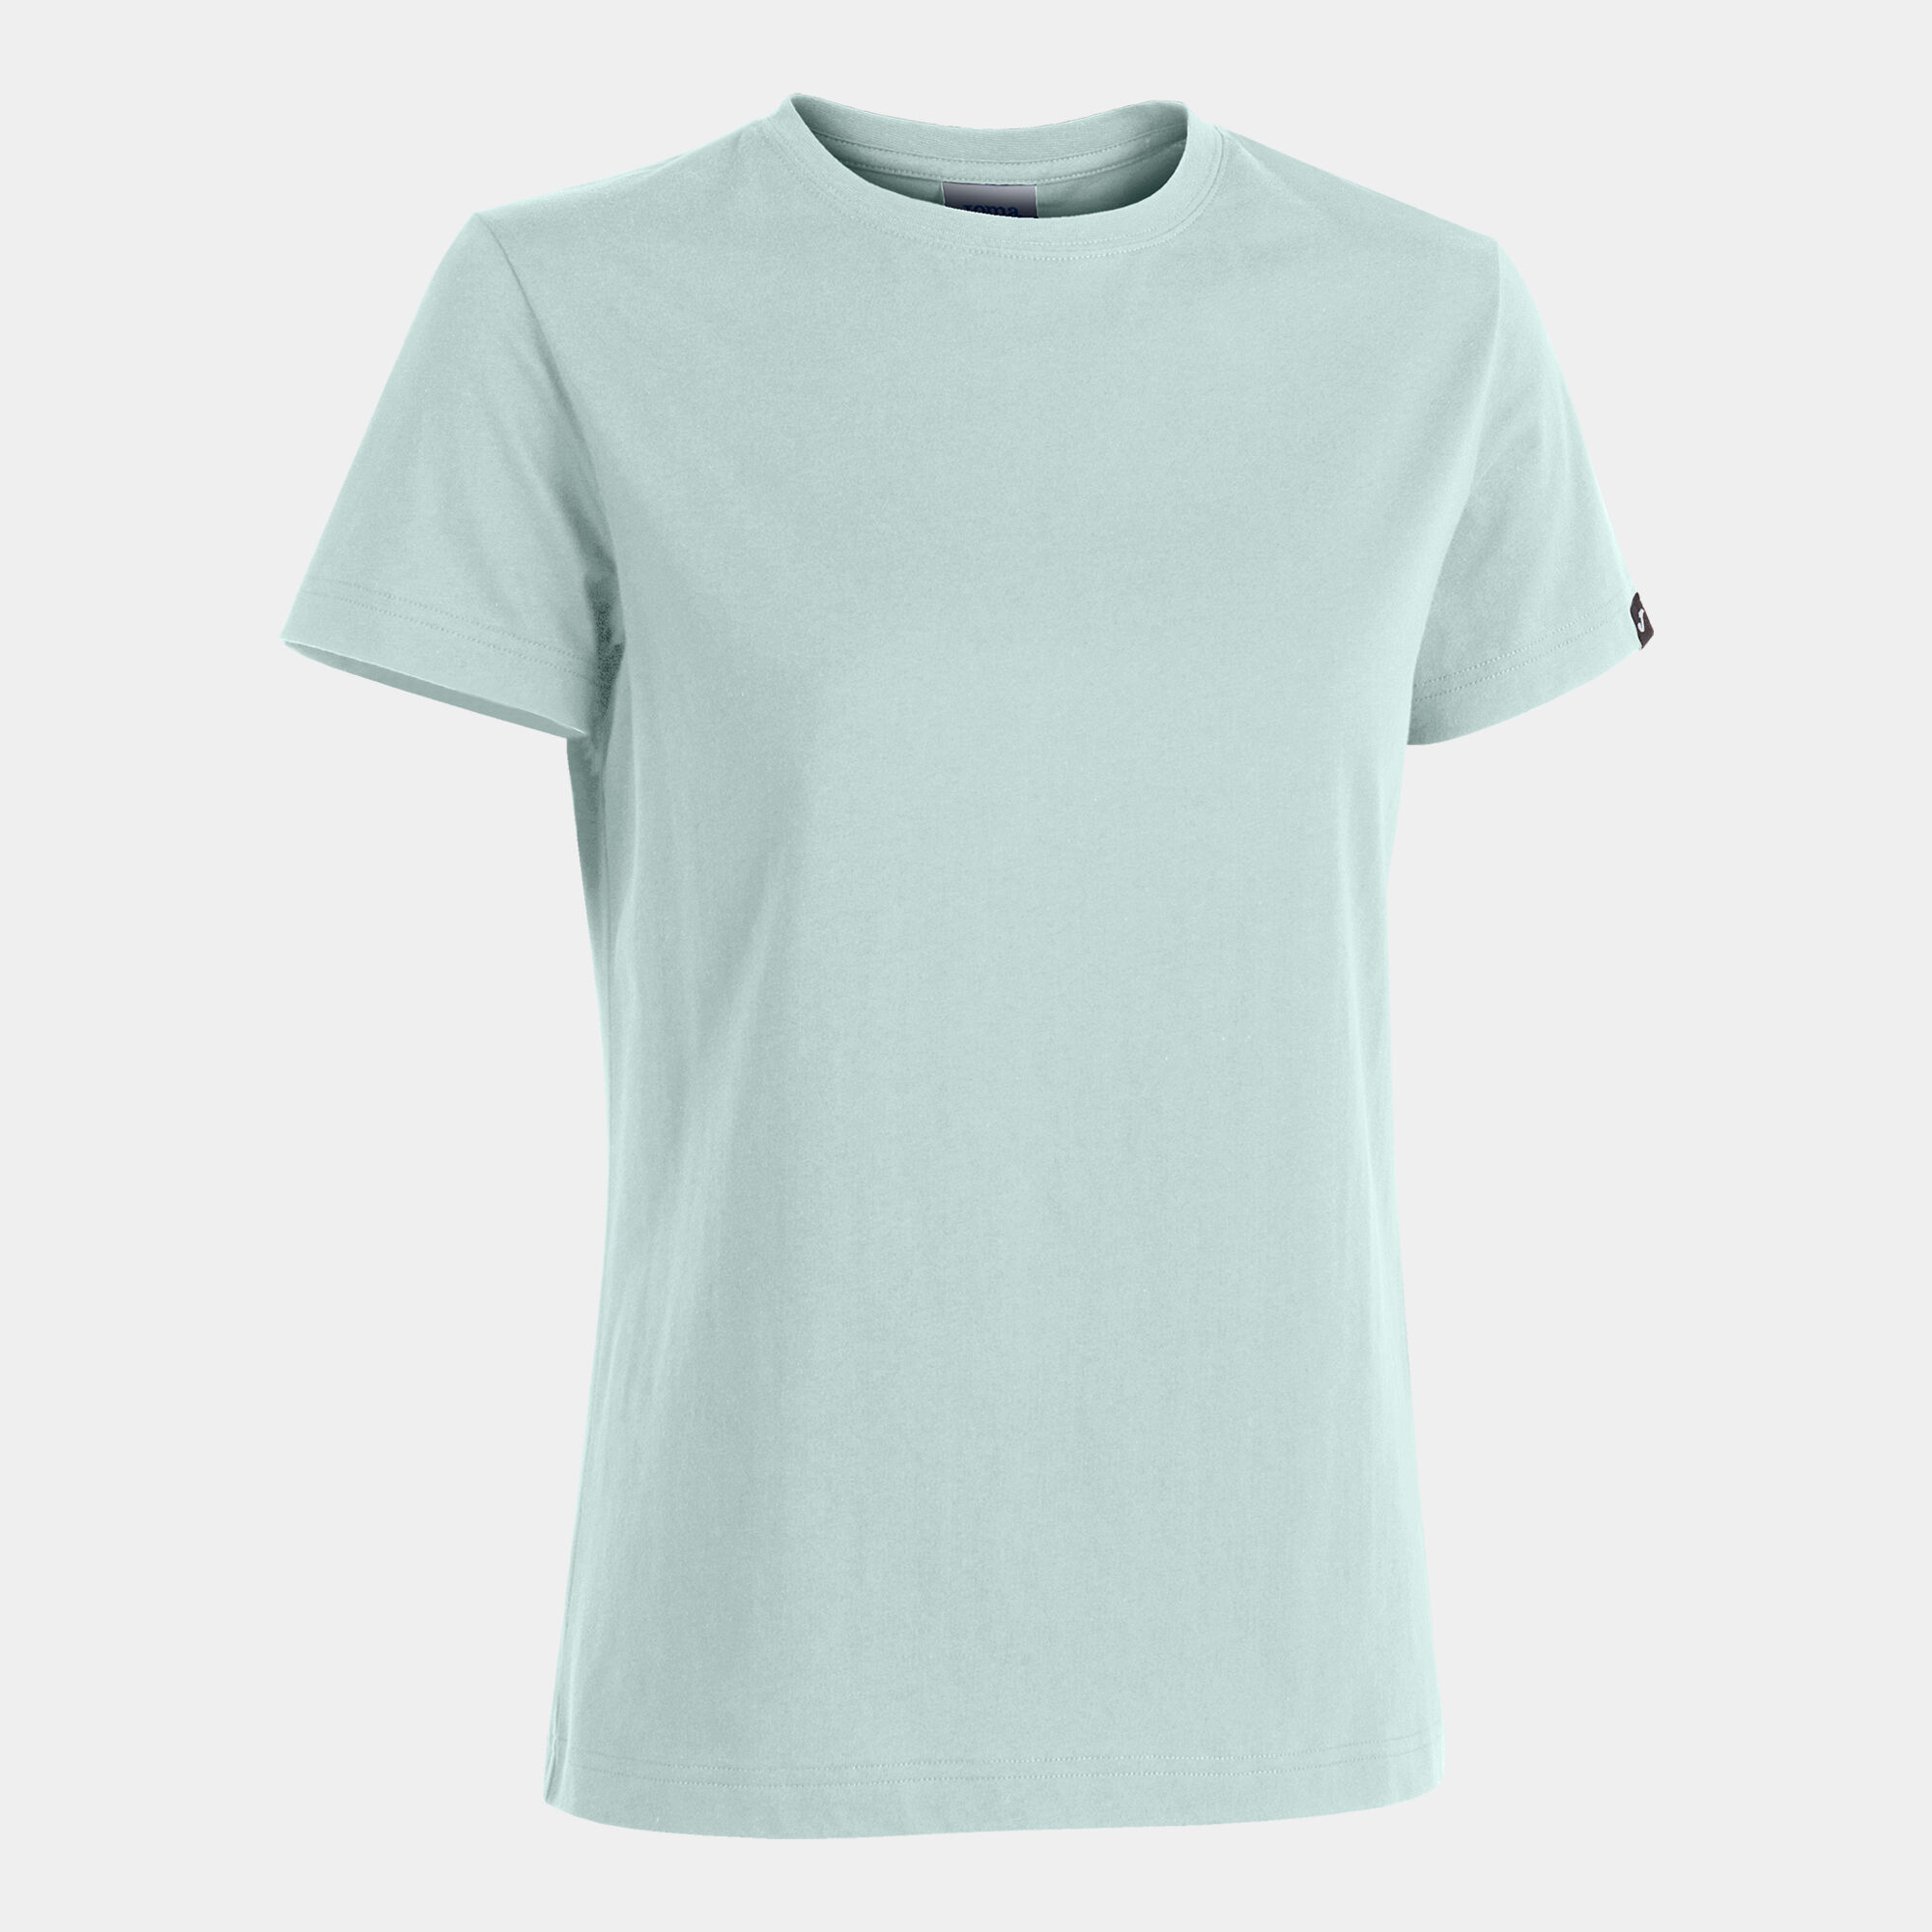 Camiseta manga corta mujer Desert azul